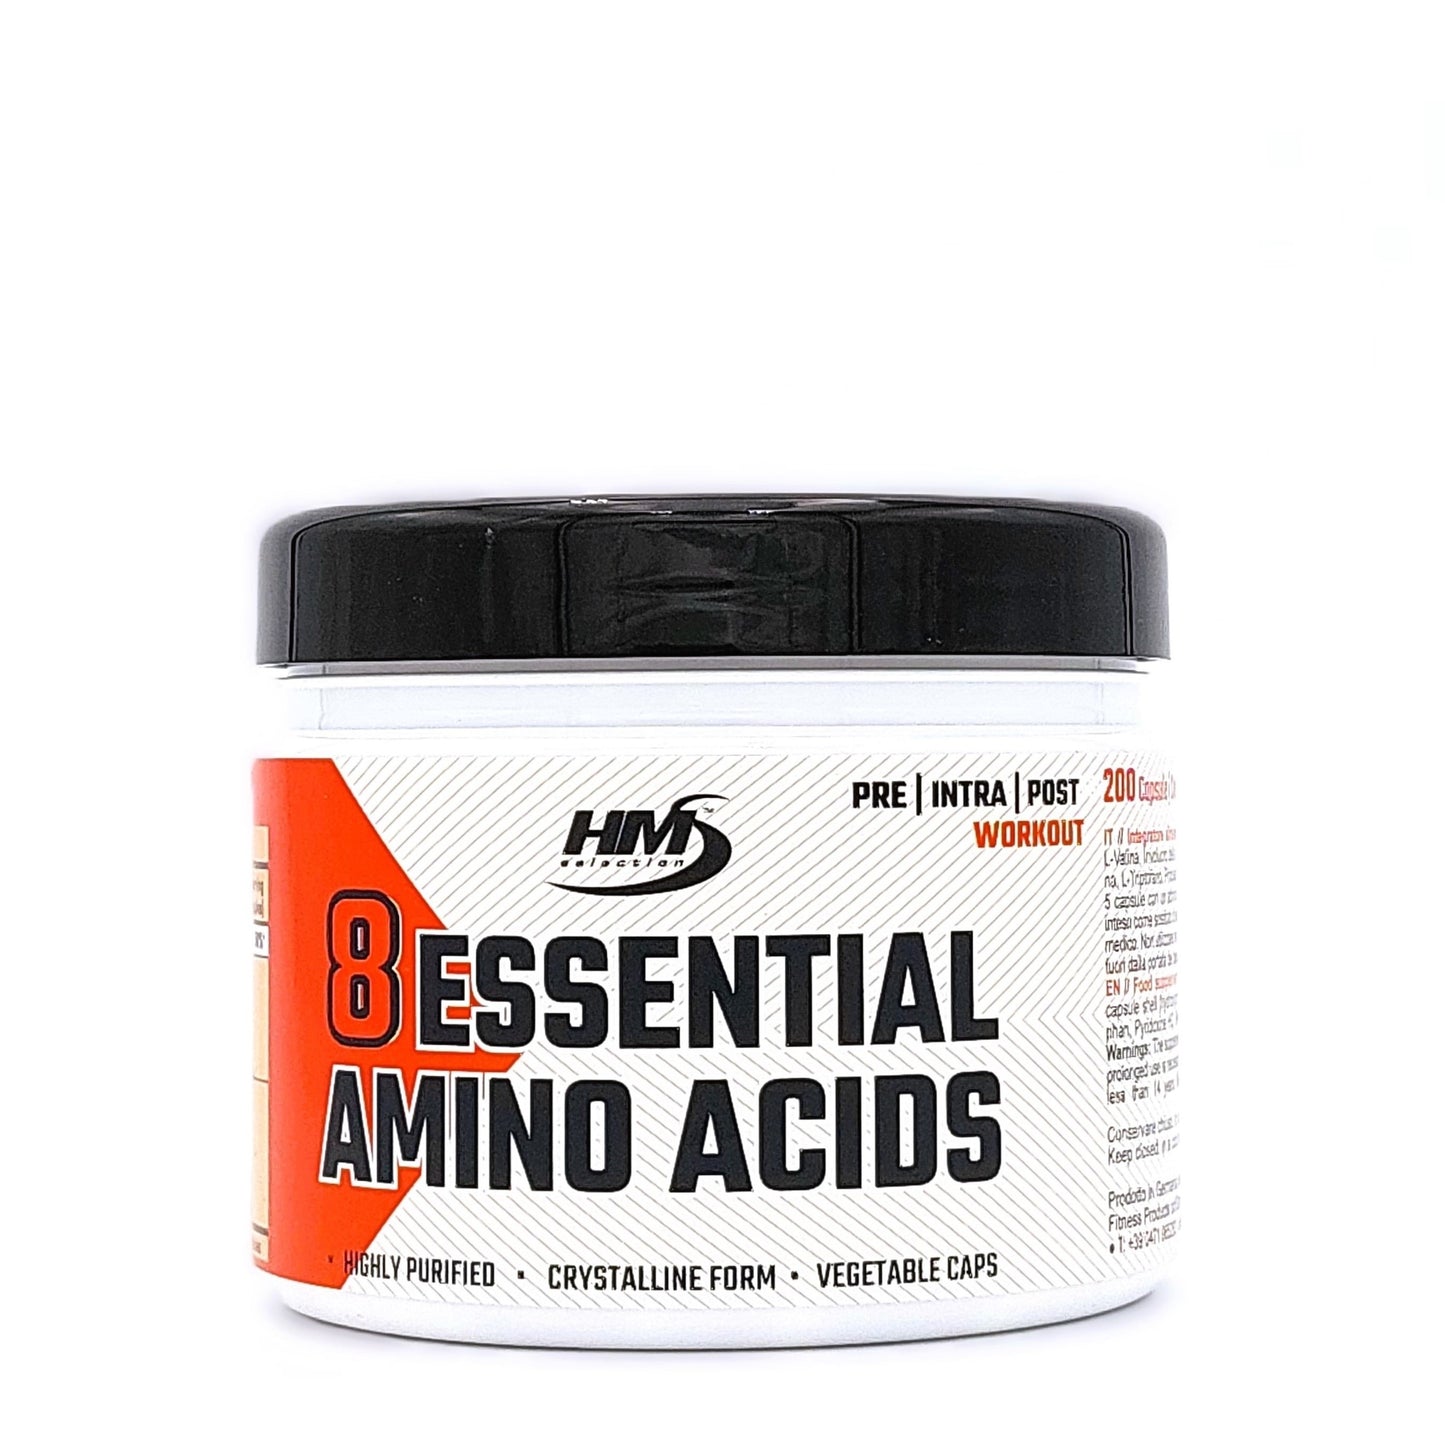 8 Essential Amino Acids, 200 Kapseln - Nahrungsergänzungsmittel mit essentiellen Aminosäuren und Vitamin B6